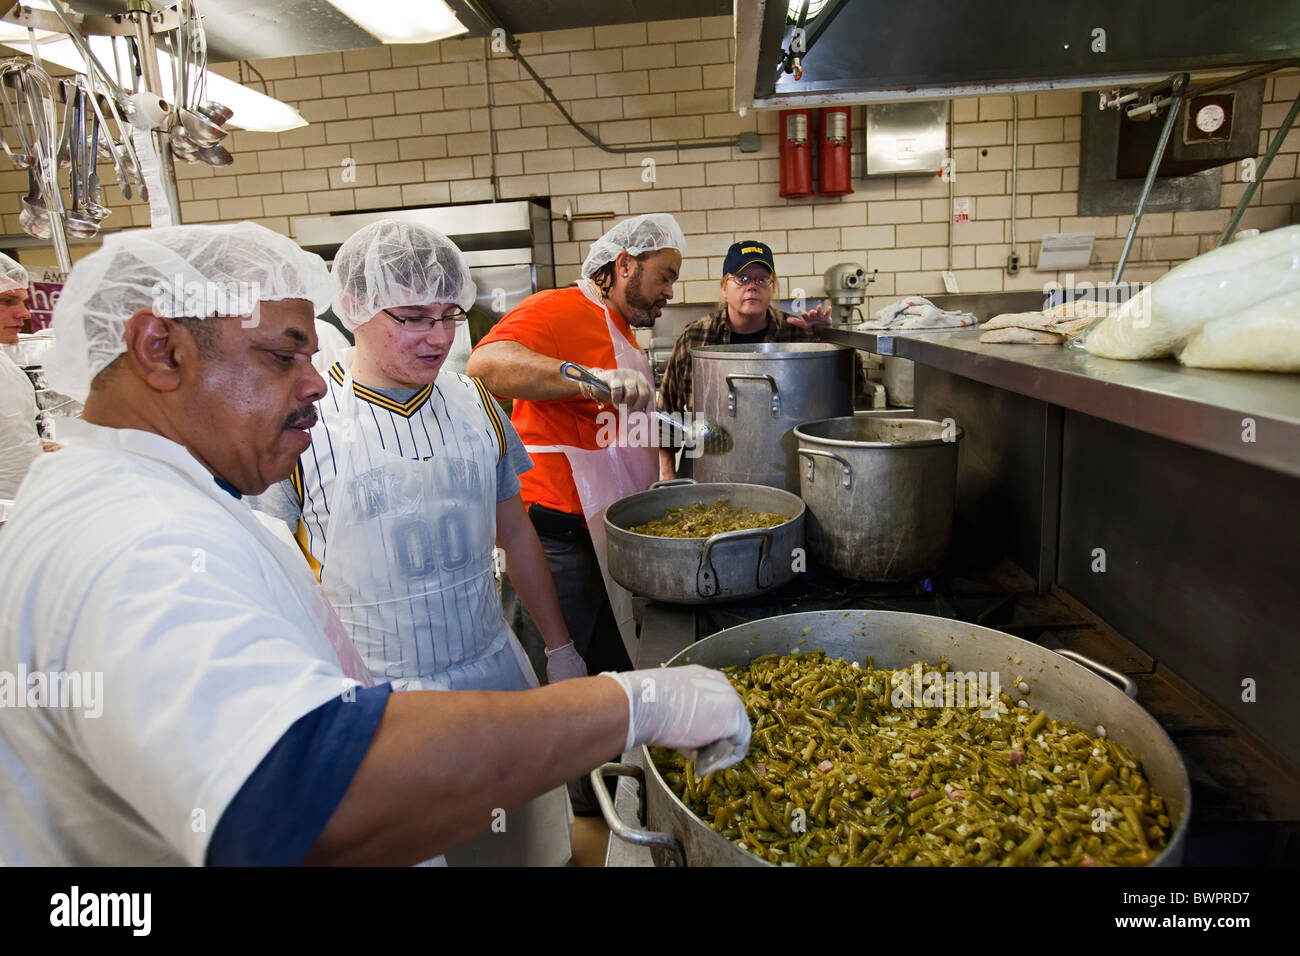 Les bénévoles de préparer le dîner de Thanksgiving pour des milliers de familles dans le besoin Banque D'Images